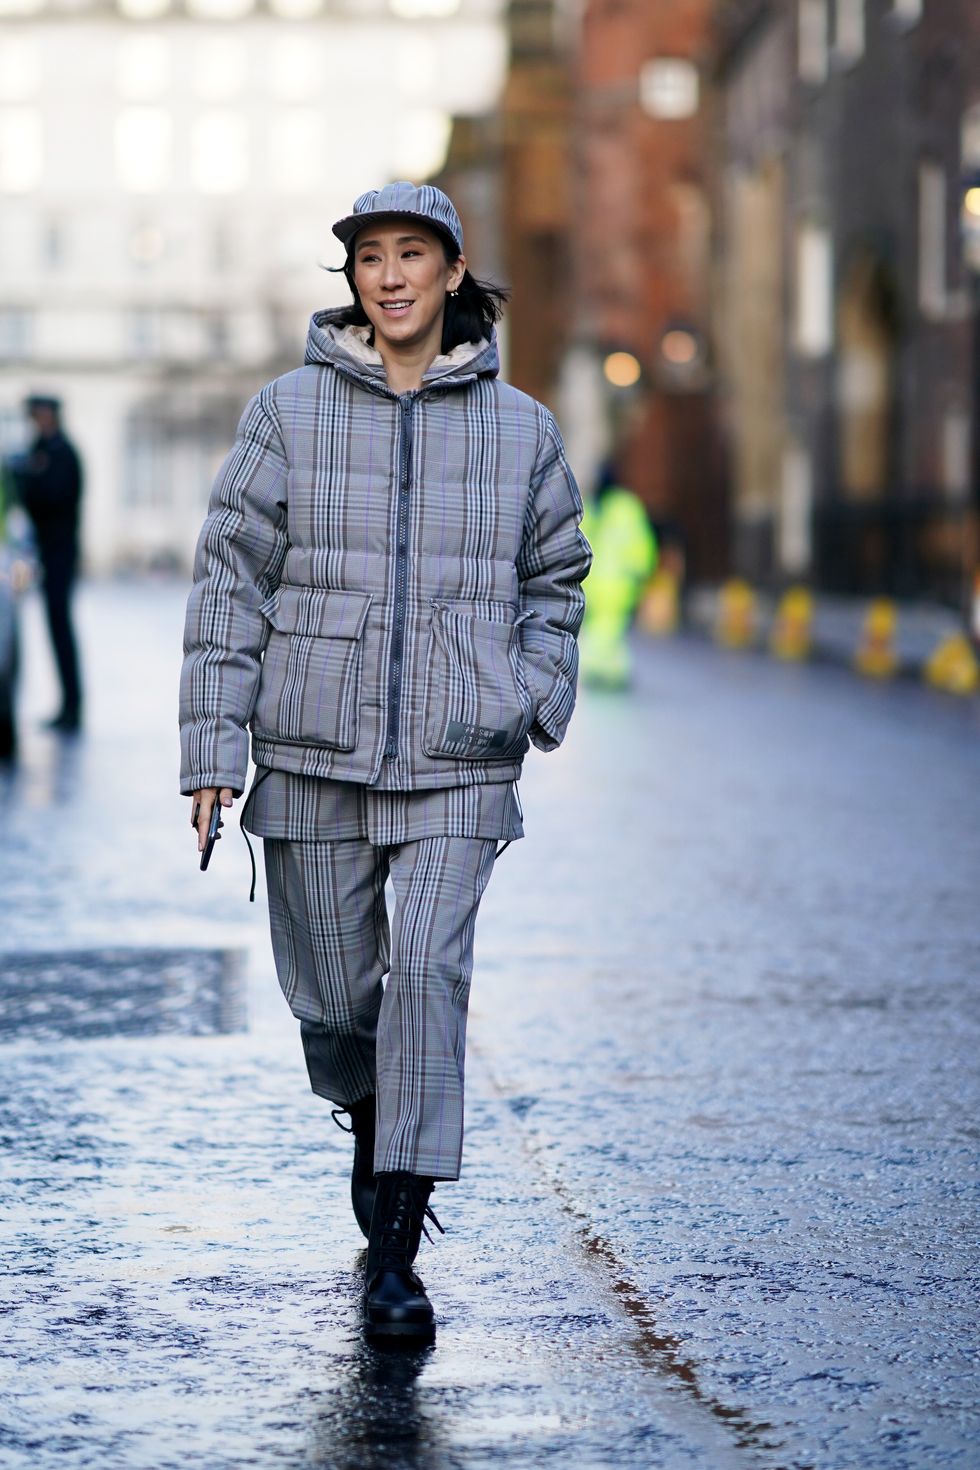 I cappotti a quadri alla London Fashion Week perfetti per la Primavera 2020